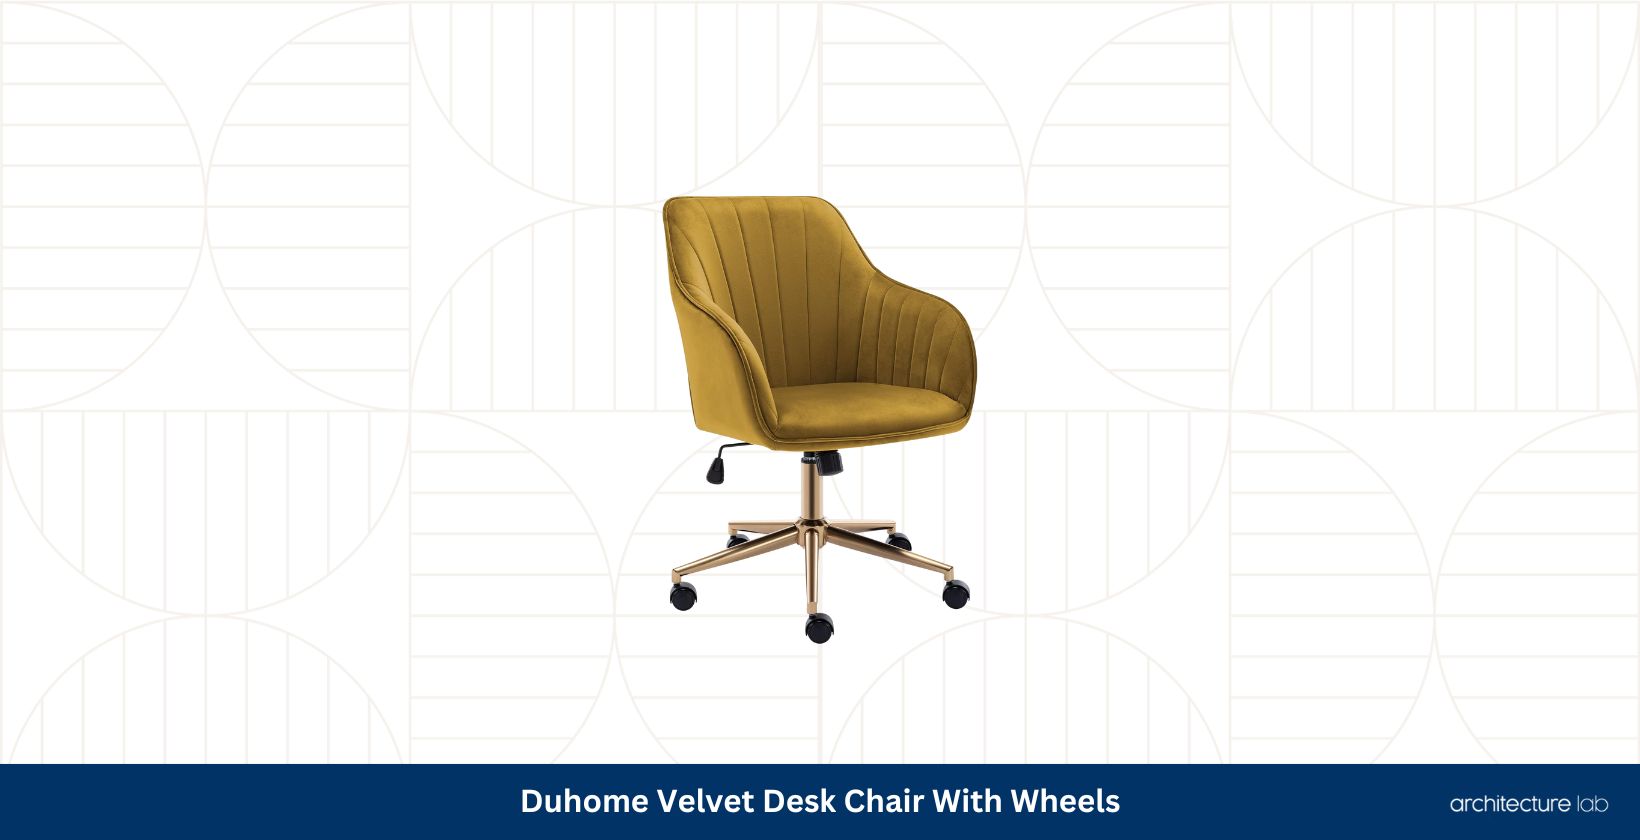 Duhome velvet desk chair with wheels